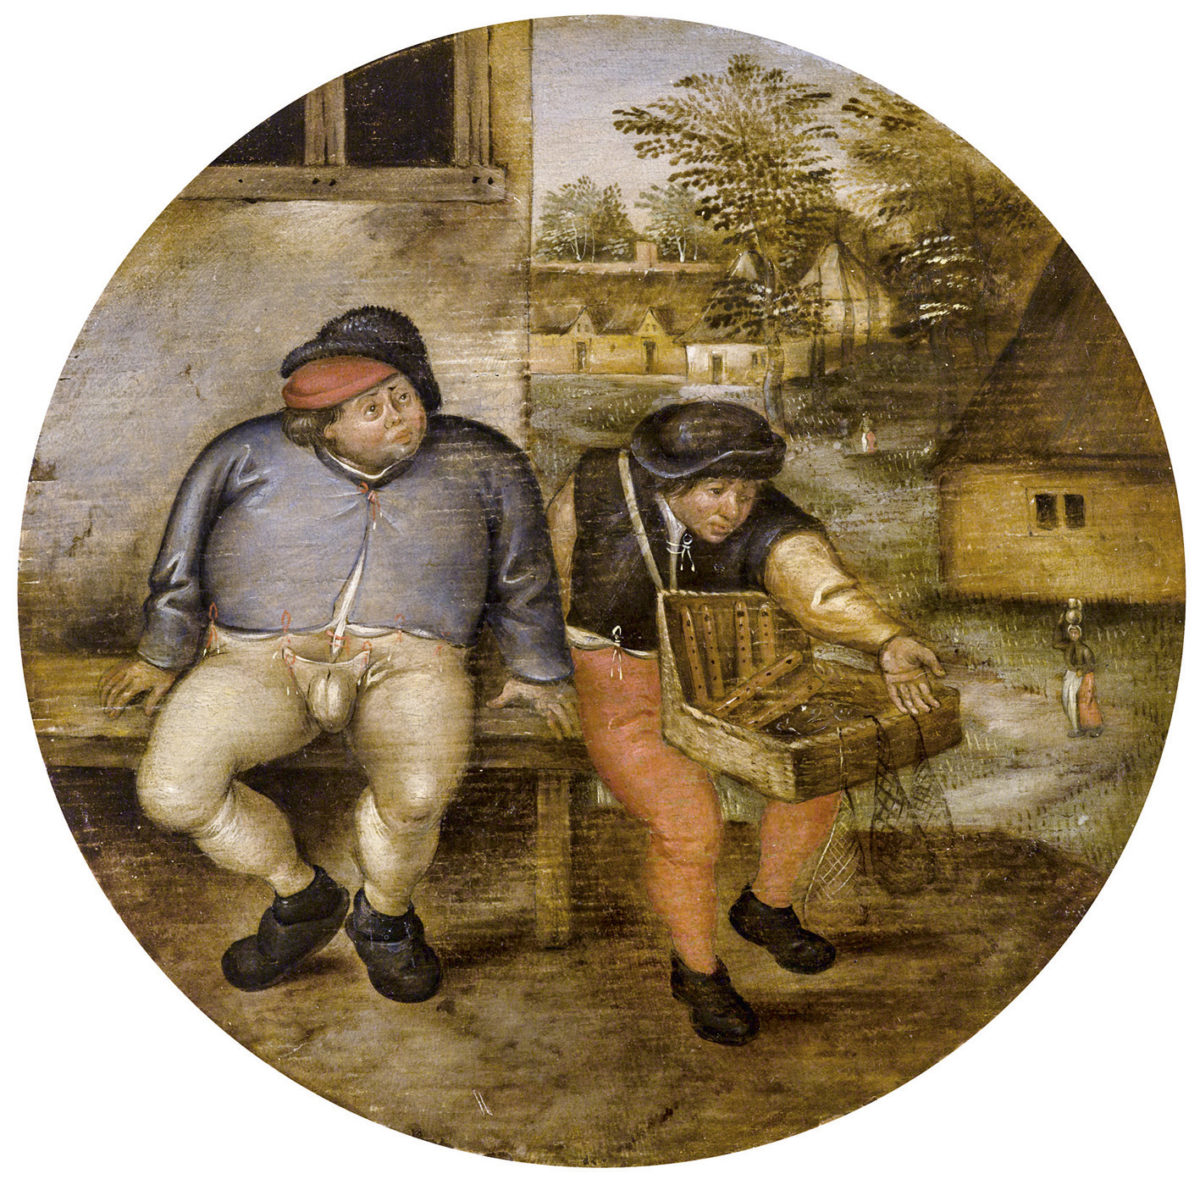 Pieter Brueghel II., Der dicke Bauer und Krämer auf einer Bank, Flämisches Sprichwort, Öl auf Holz, Tondo, Dm 18 cm, gerahmt. erzielter Preis: 216.784, Schätzwert 180.000 - 220.000 Euro